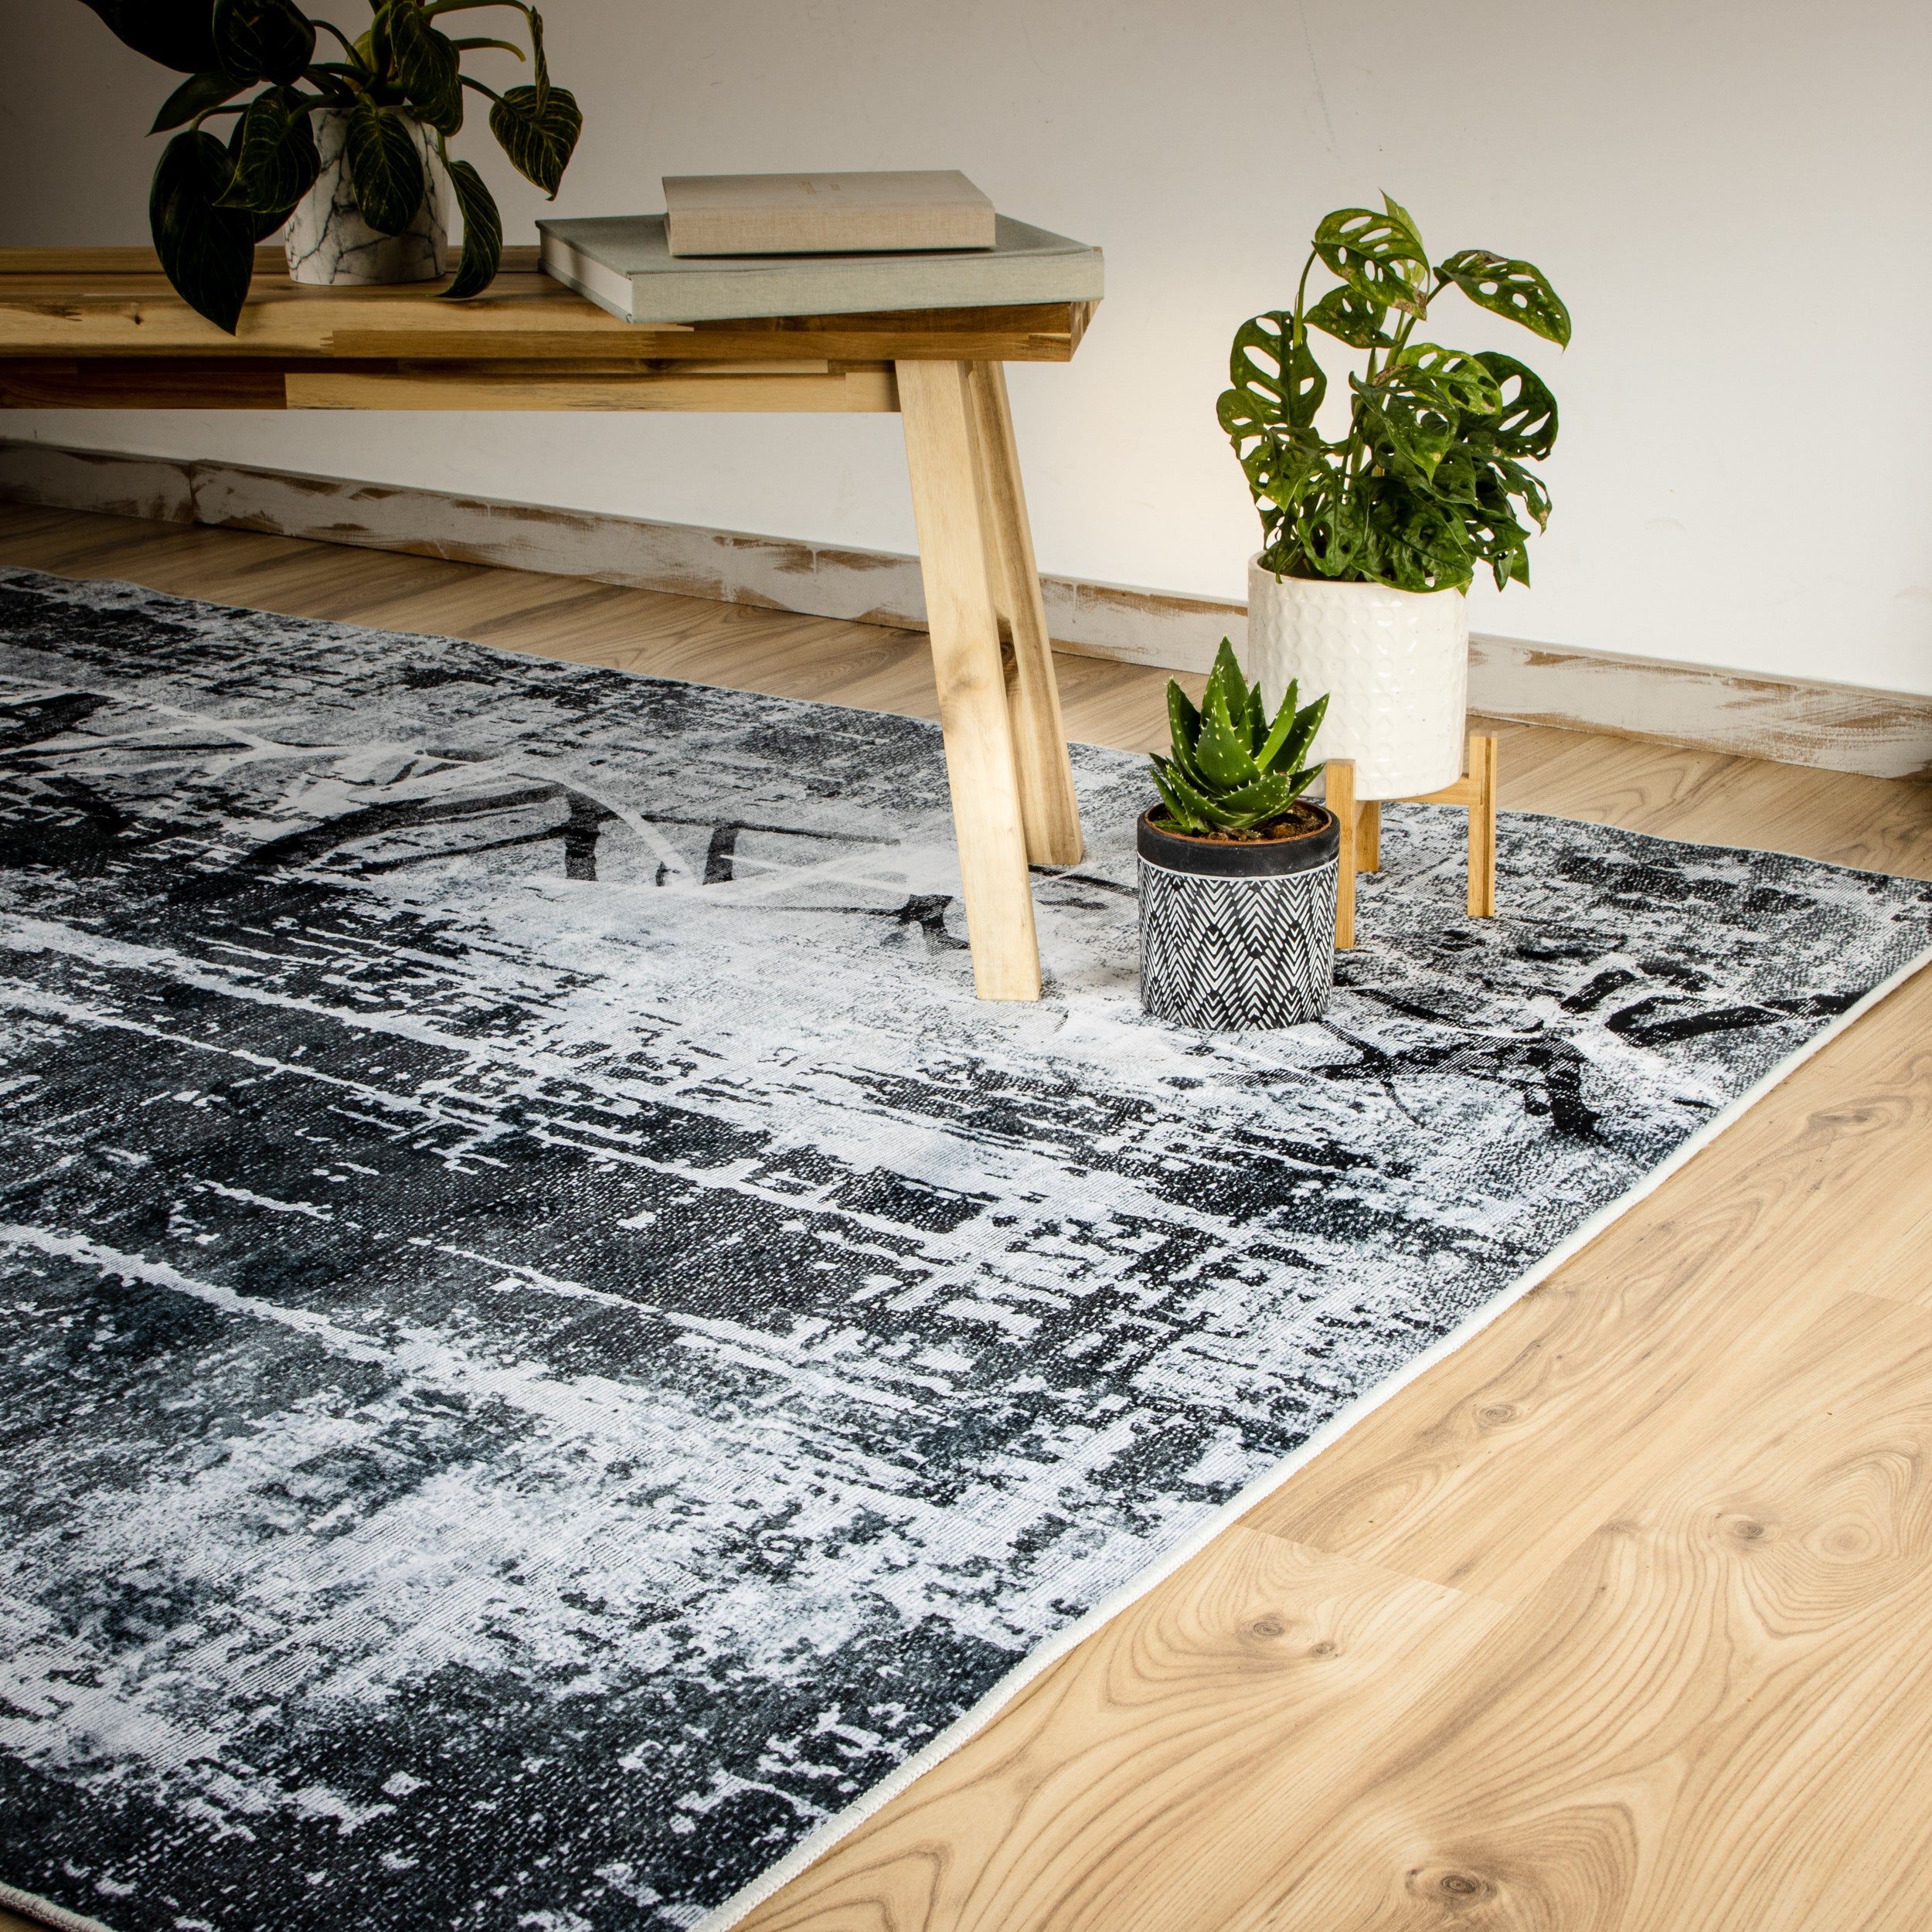 My Tampa 131 grey Teppich: Stilvolles Design, praktische Funktionalität für dein Zuhause